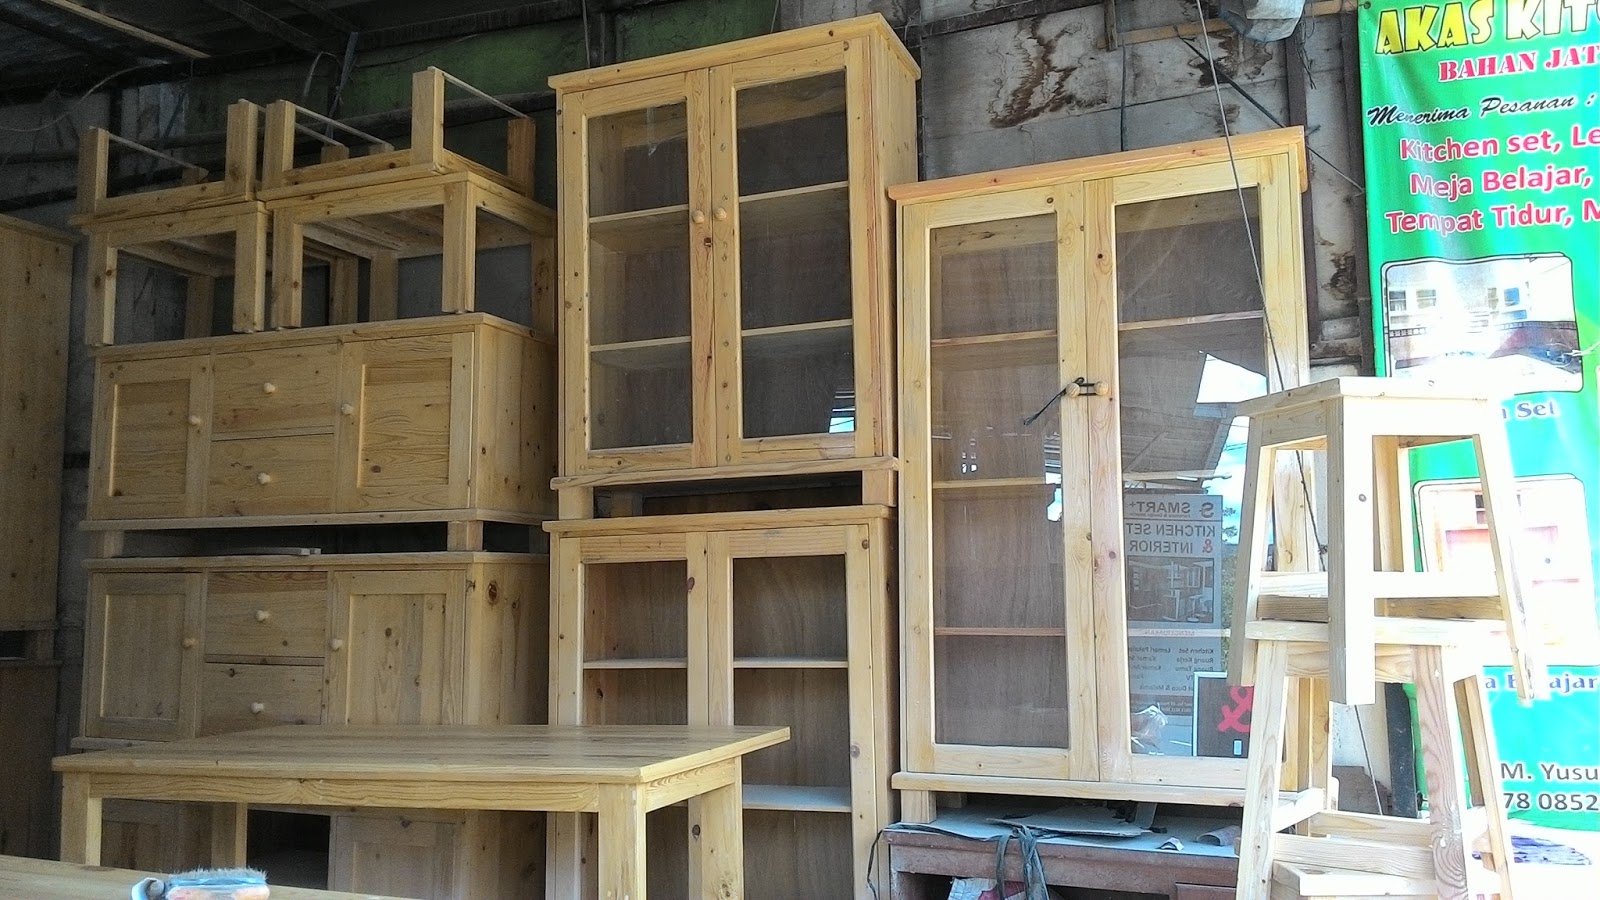 Furniture Kayu  Jati  Belanda  Akas Kitchen  Set  Di Depok 